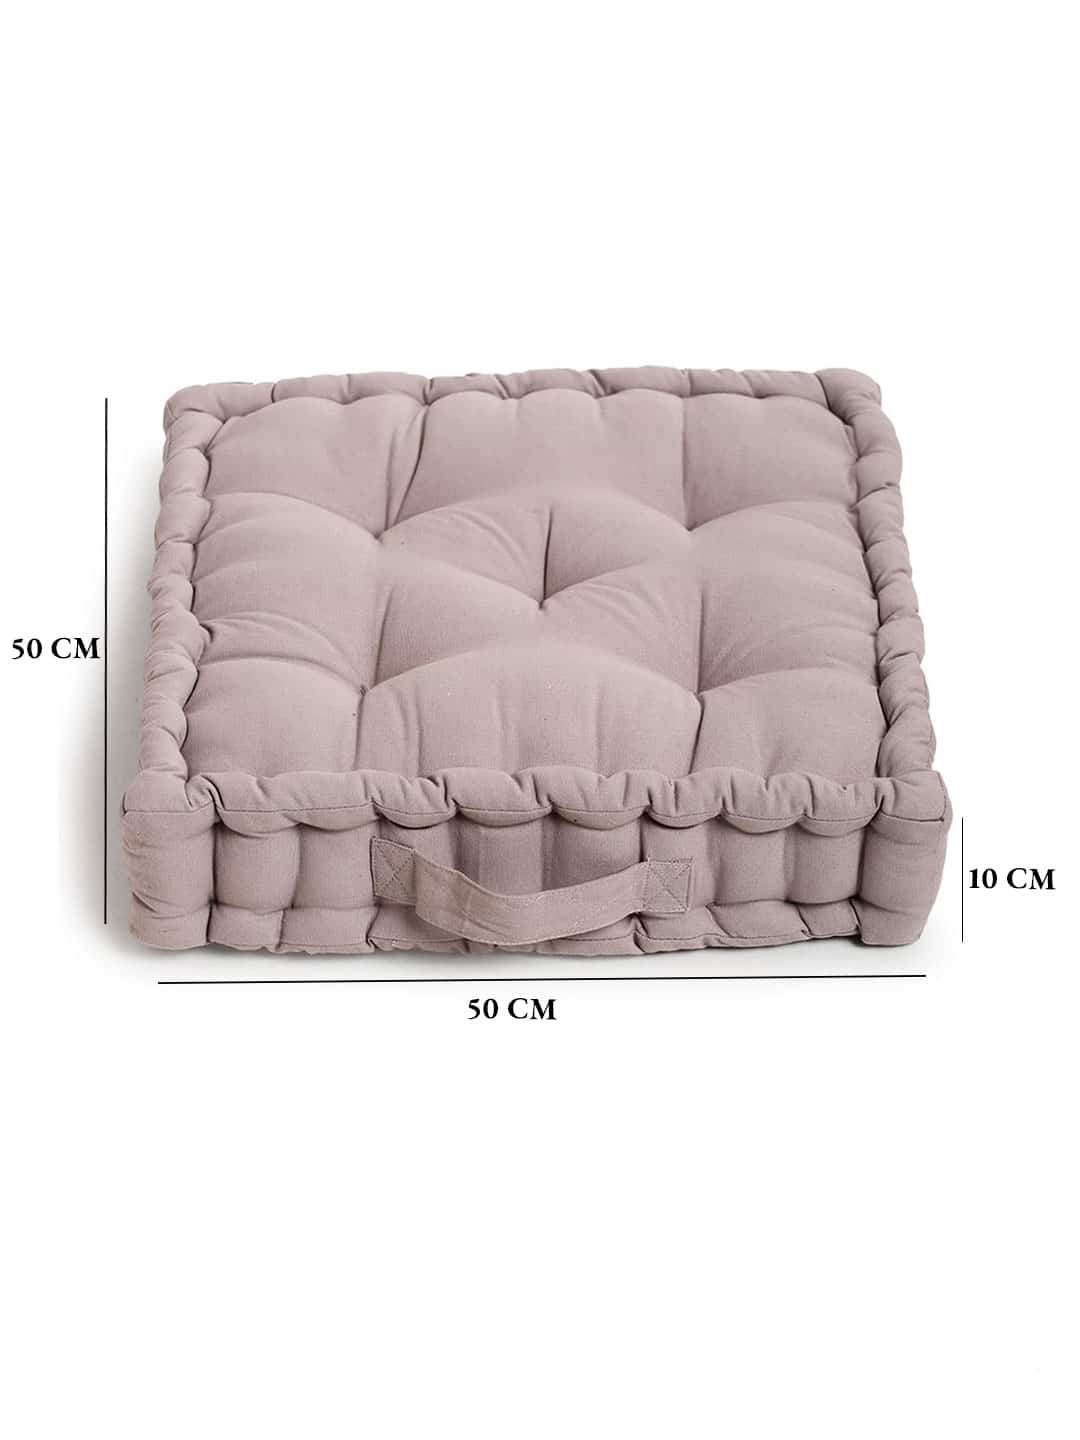 Blanc9 Cloudy Matlas Floor Cushion